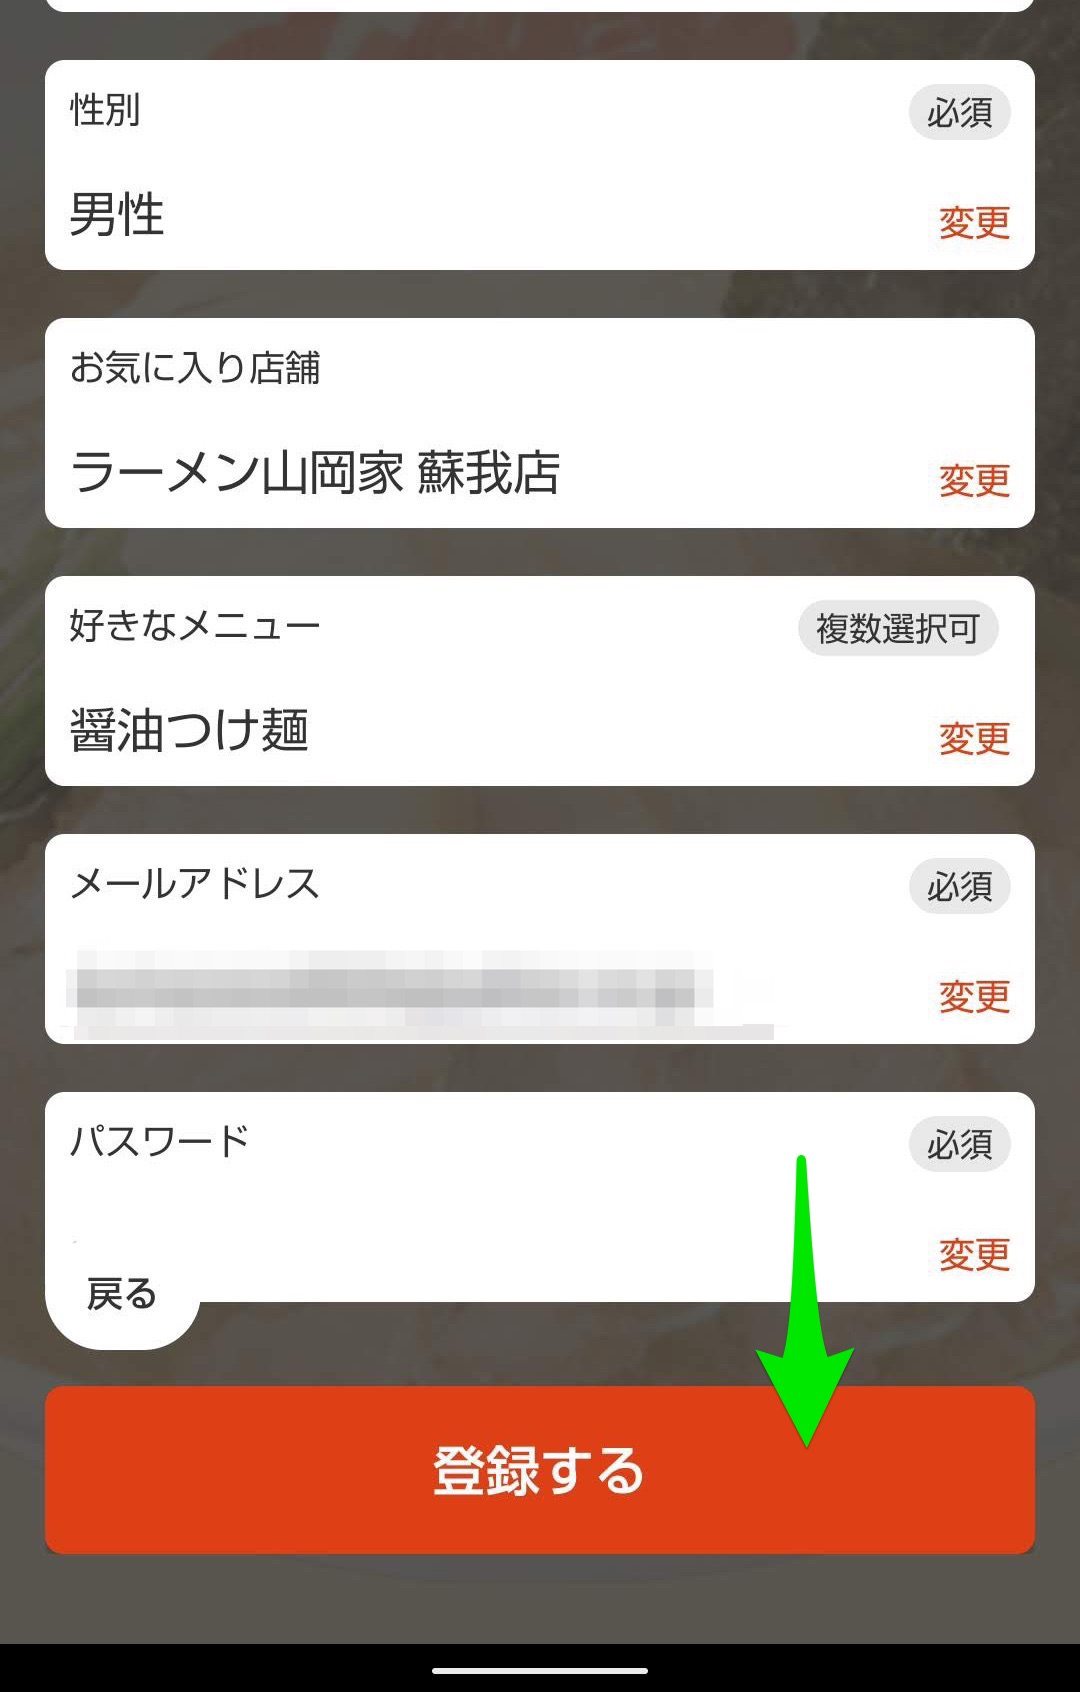 ラーメン山岡家公式アプリ　ユーザー登録ログイン 登録する